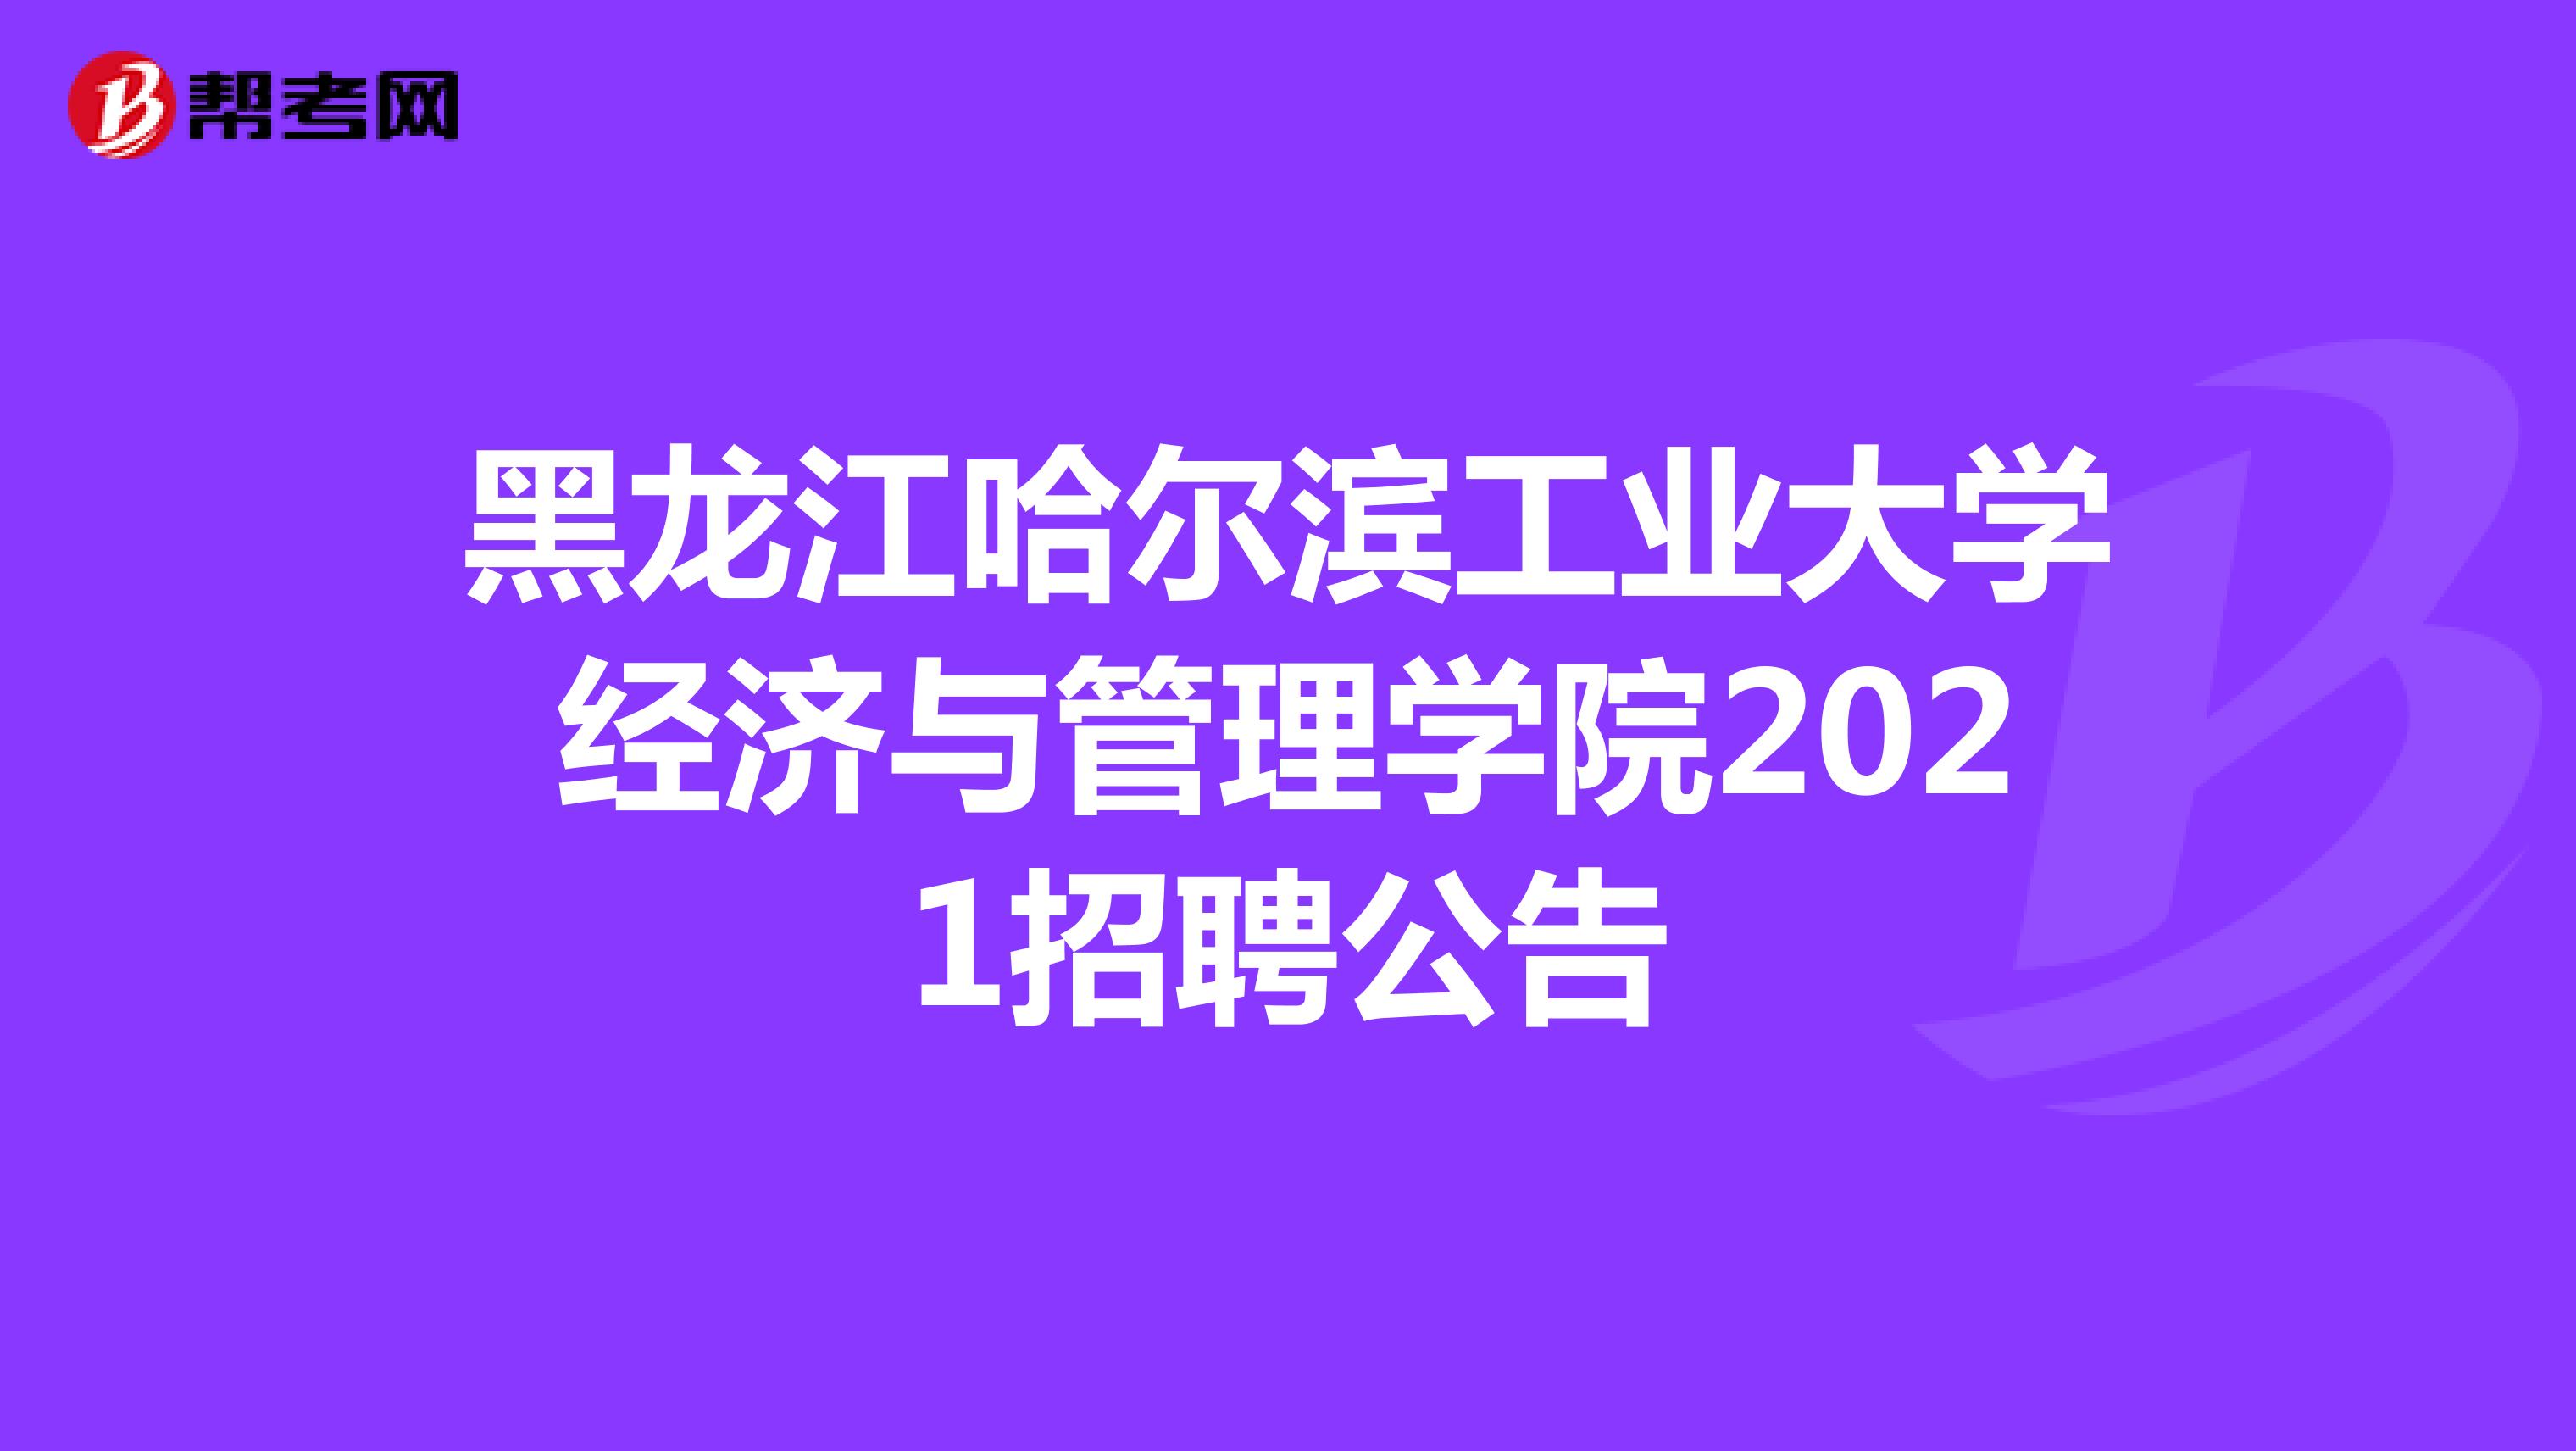 黑龙江哈尔滨工业大学经济与管理学院2021招聘公告 